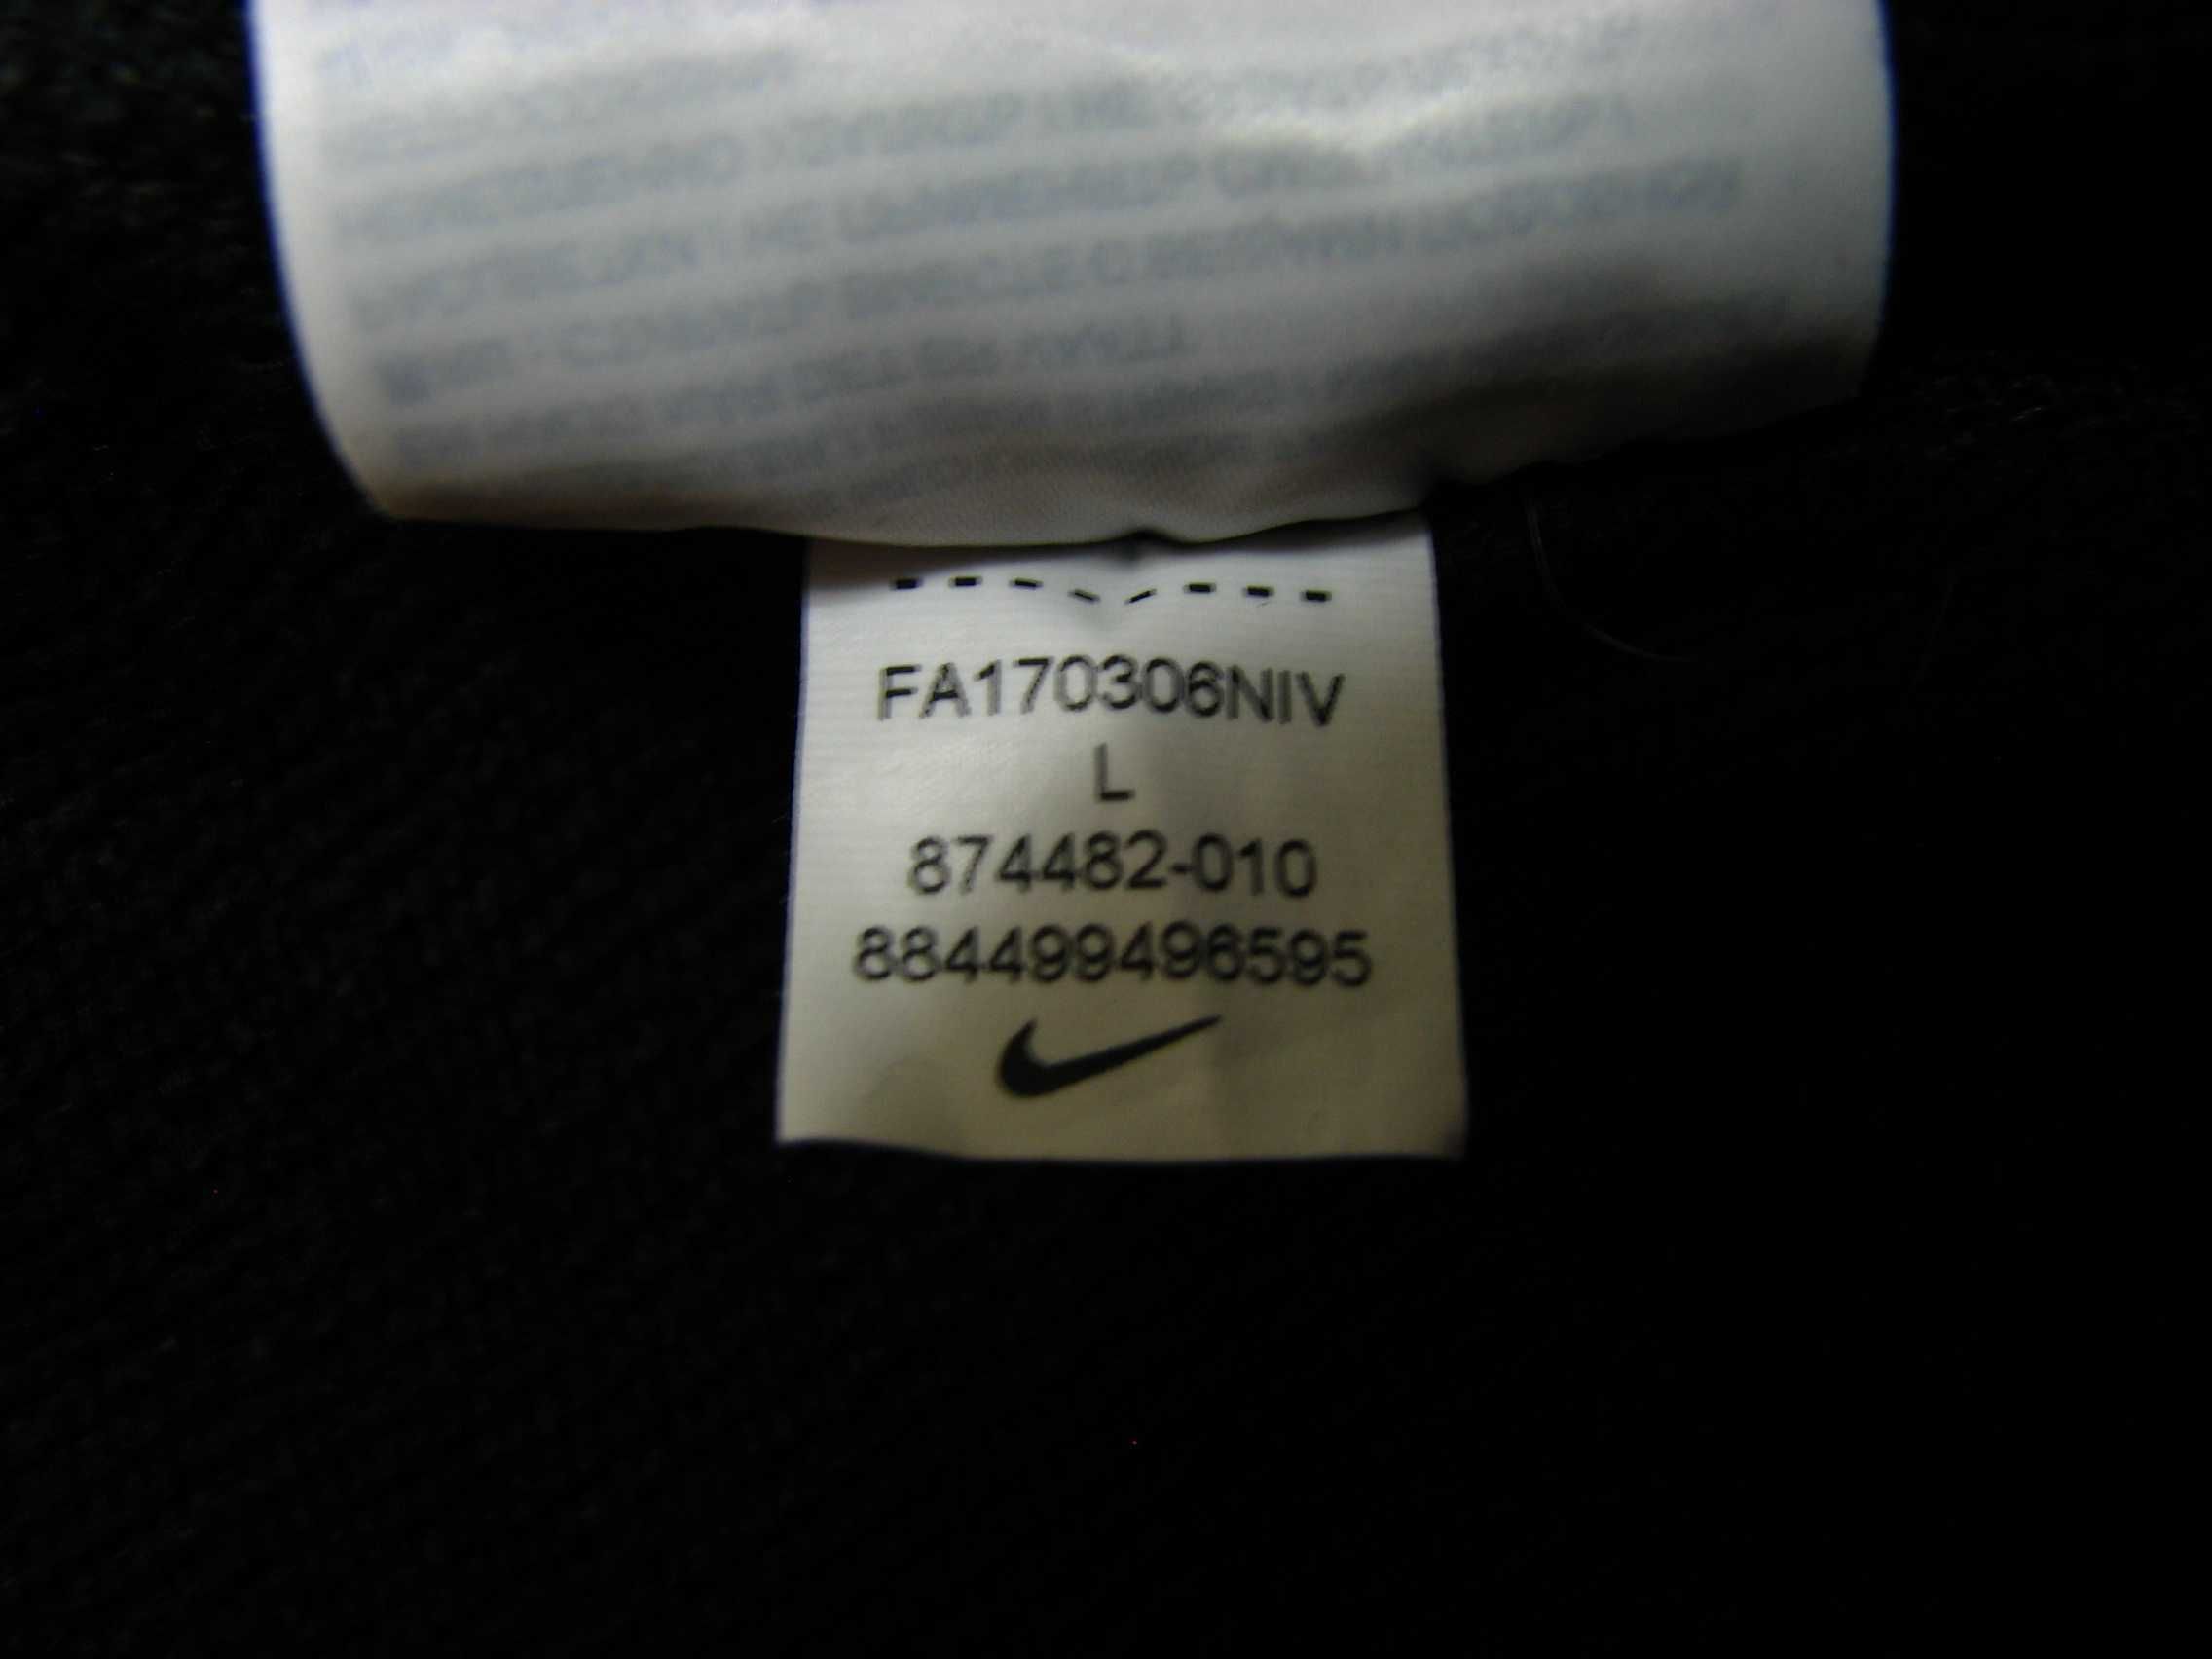 Damskie spodnie treningowe Nike Dry Tapered